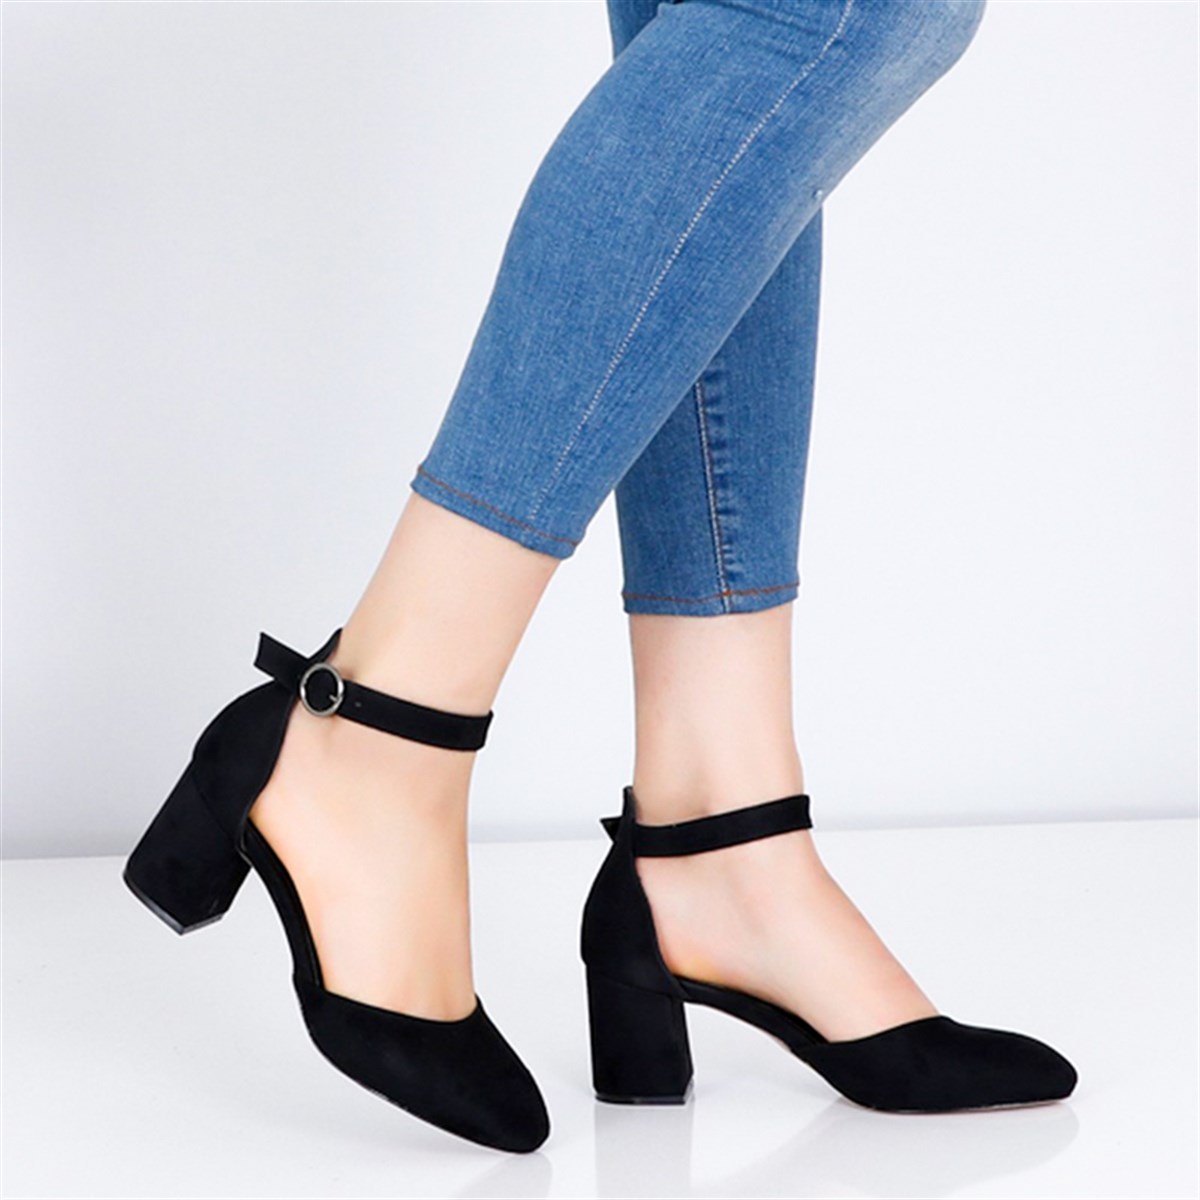 Siyah süet Alçak Topuklu Kadın Ayakkabı 307Y Fiyatı ve Modelleri